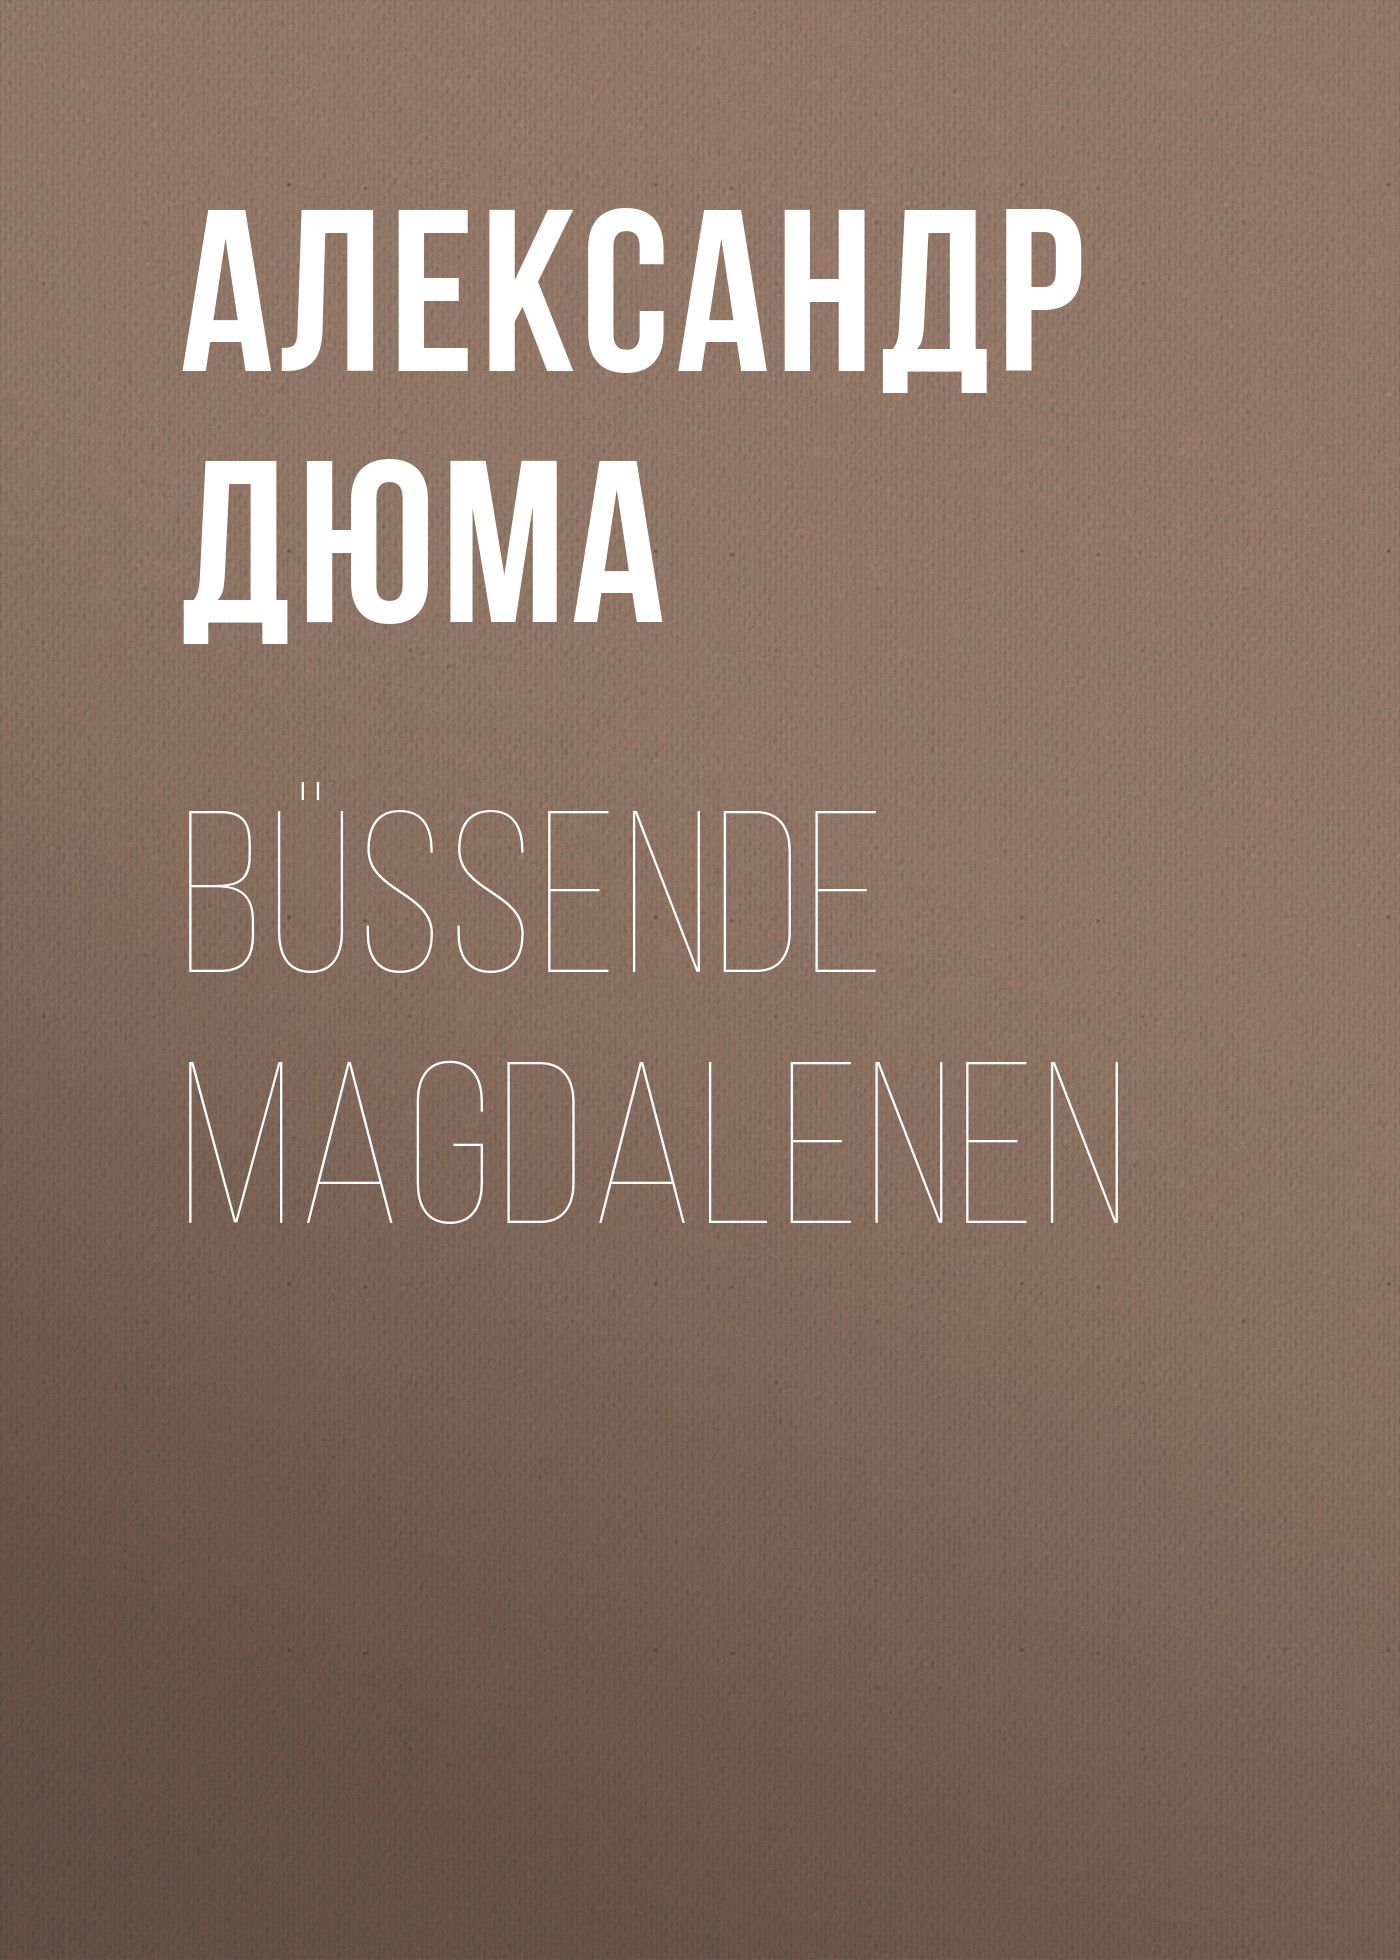 Книга Büßende Magdalenen из серии , созданная Alexandre Dumas der Ältere, может относится к жанру Зарубежная классика. Стоимость электронной книги Büßende Magdalenen с идентификатором 48632364 составляет 0 руб.